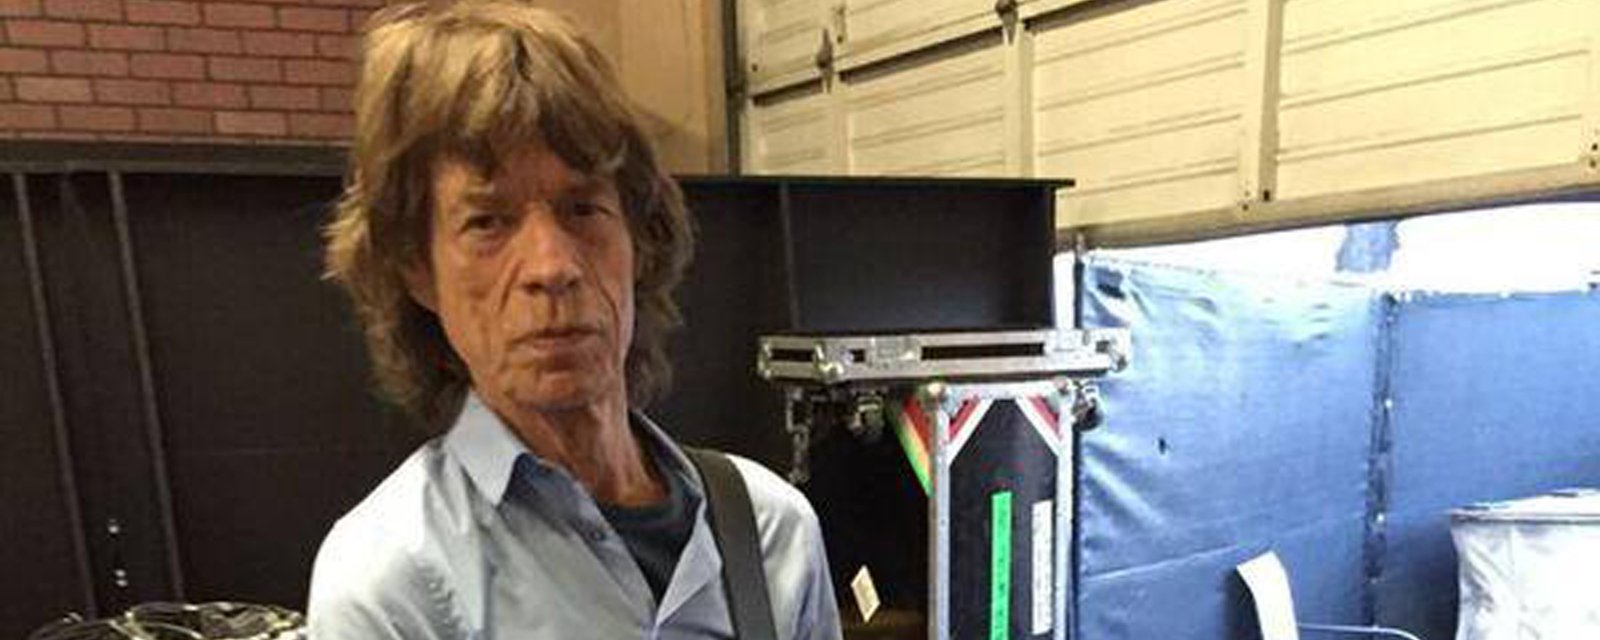 Les docteurs s'inquiètent pour Mick Jagger...